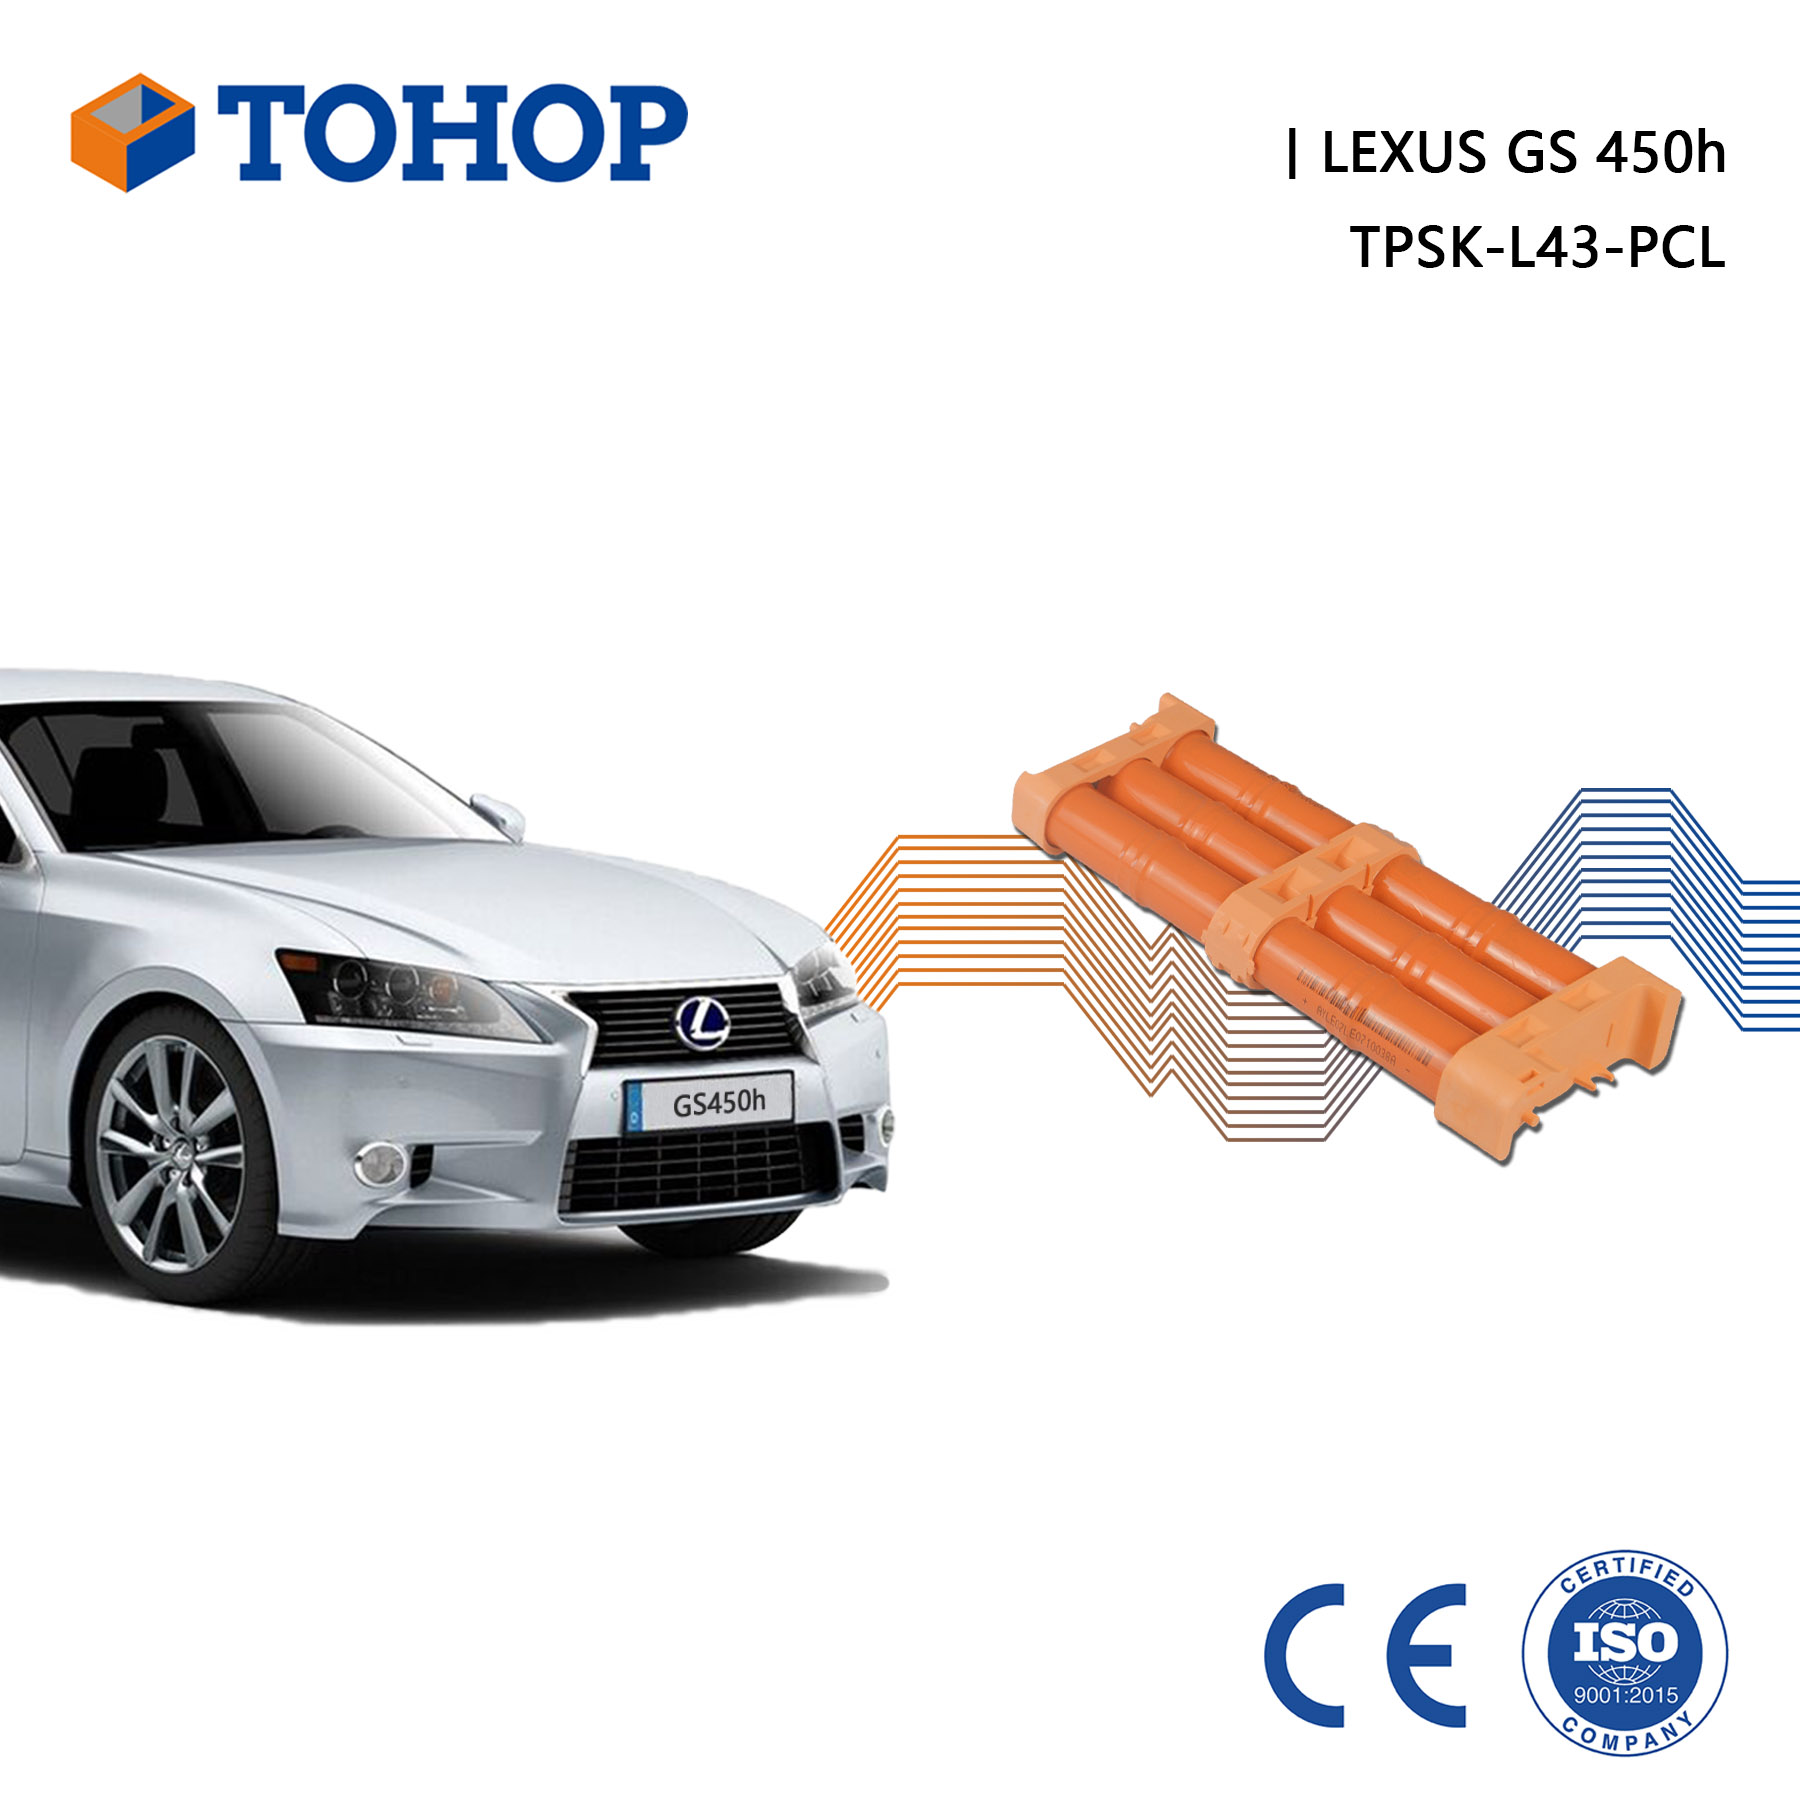 Thrid Gen. S190 NOUVEAU 14,4V 6.5AH GS 450H Hybrid Car Battery Pack pour Lexus